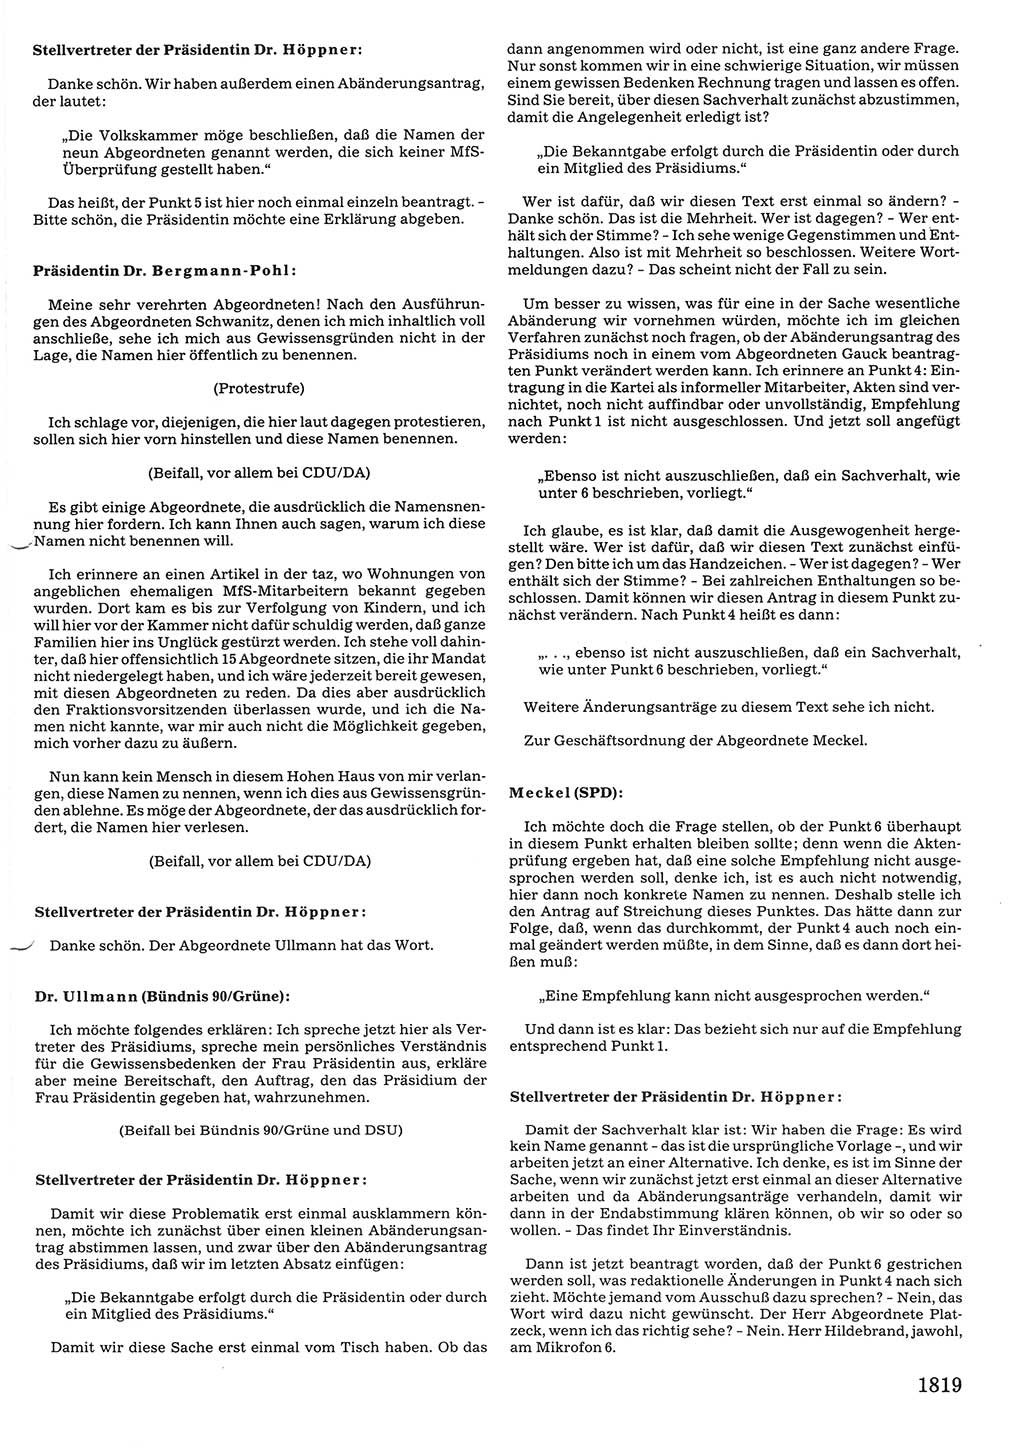 Tagungen der Volkskammer (VK) der Deutschen Demokratischen Republik (DDR), 10. Wahlperiode 1990, Seite 1819 (VK. DDR 10. WP. 1990, Prot. Tg. 1-38, 5.4.-2.10.1990, S. 1819)